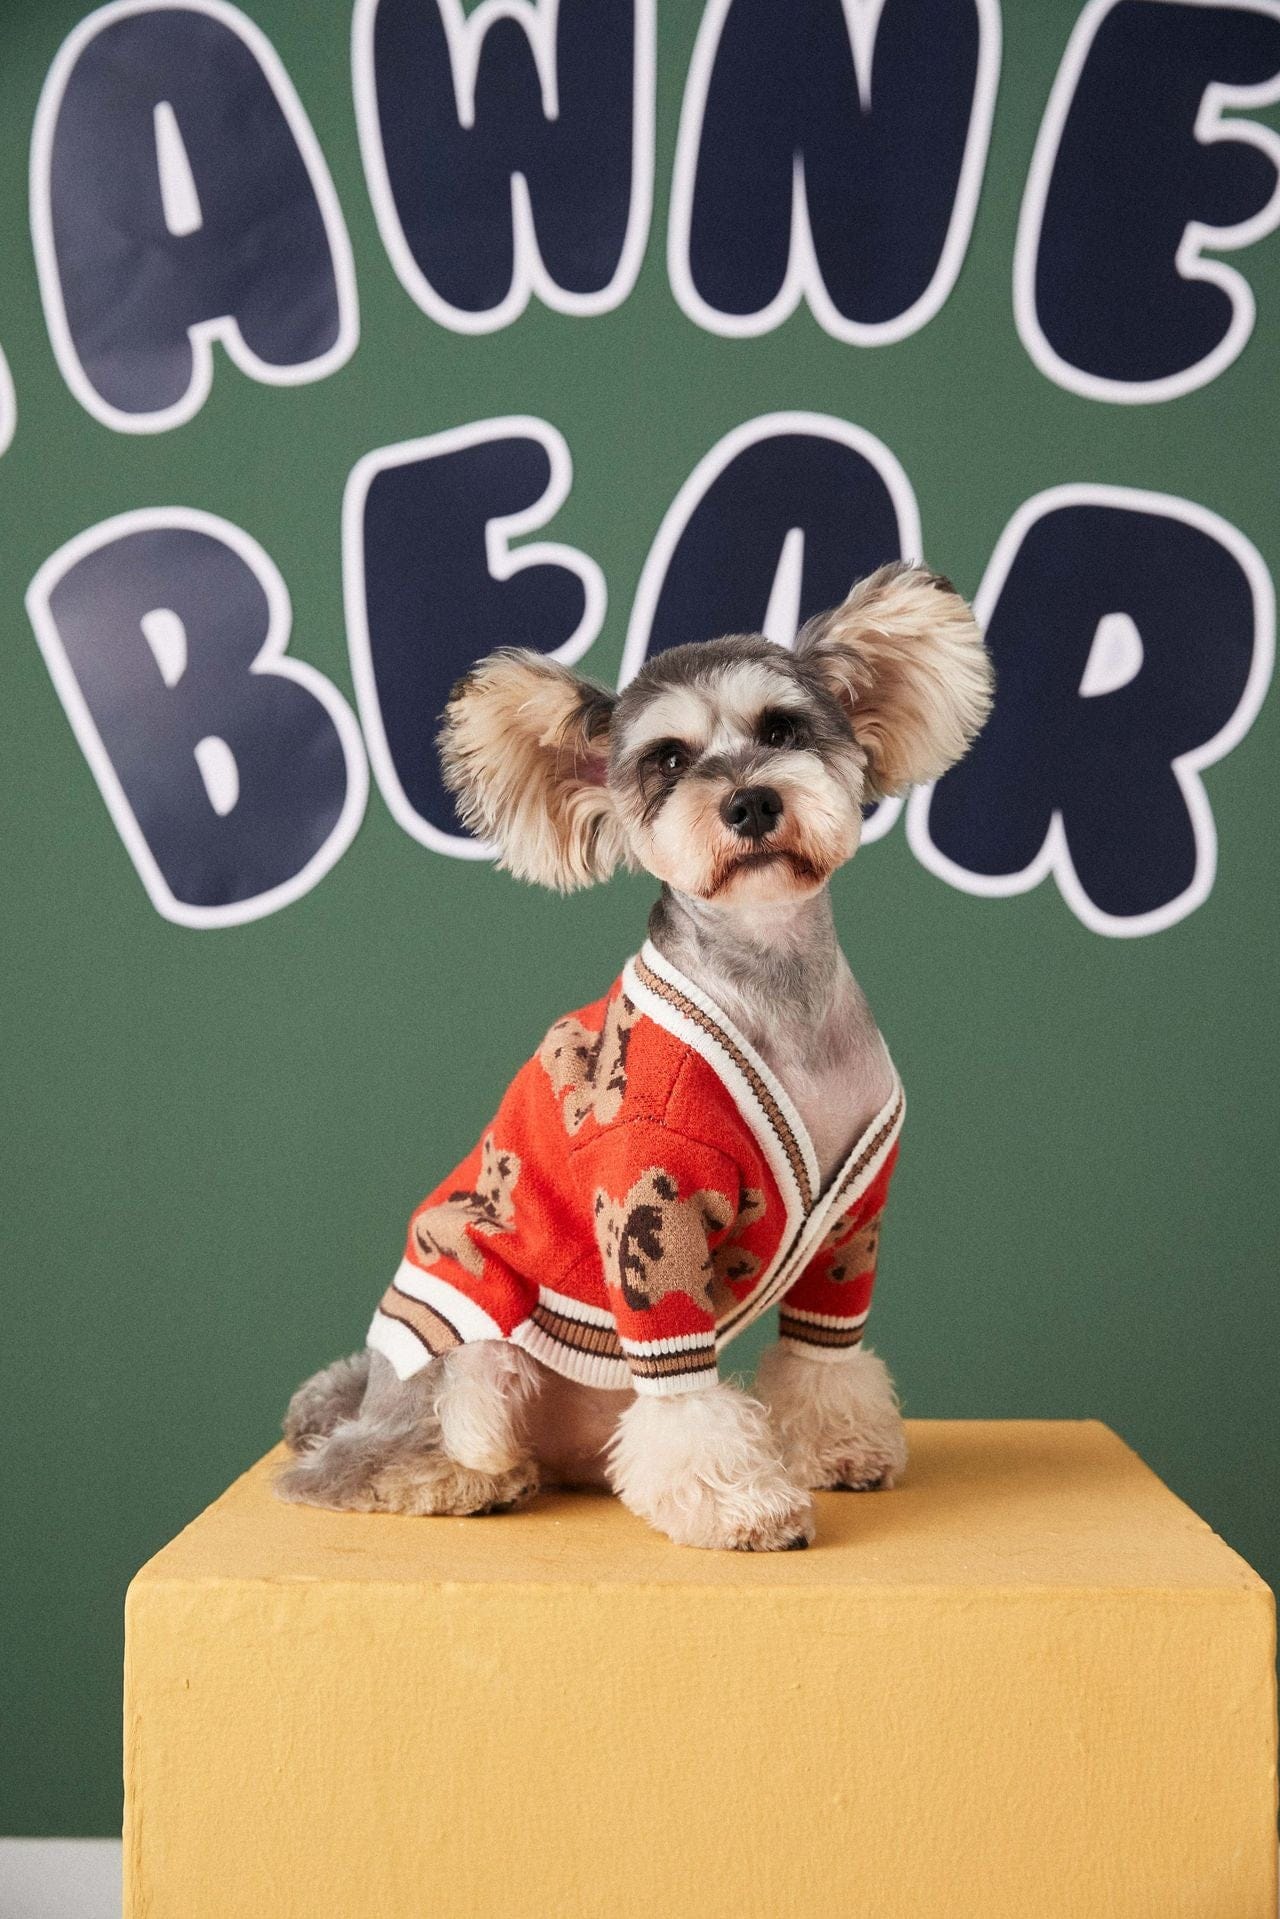 Dog Sweater Preppy Style V-Neck